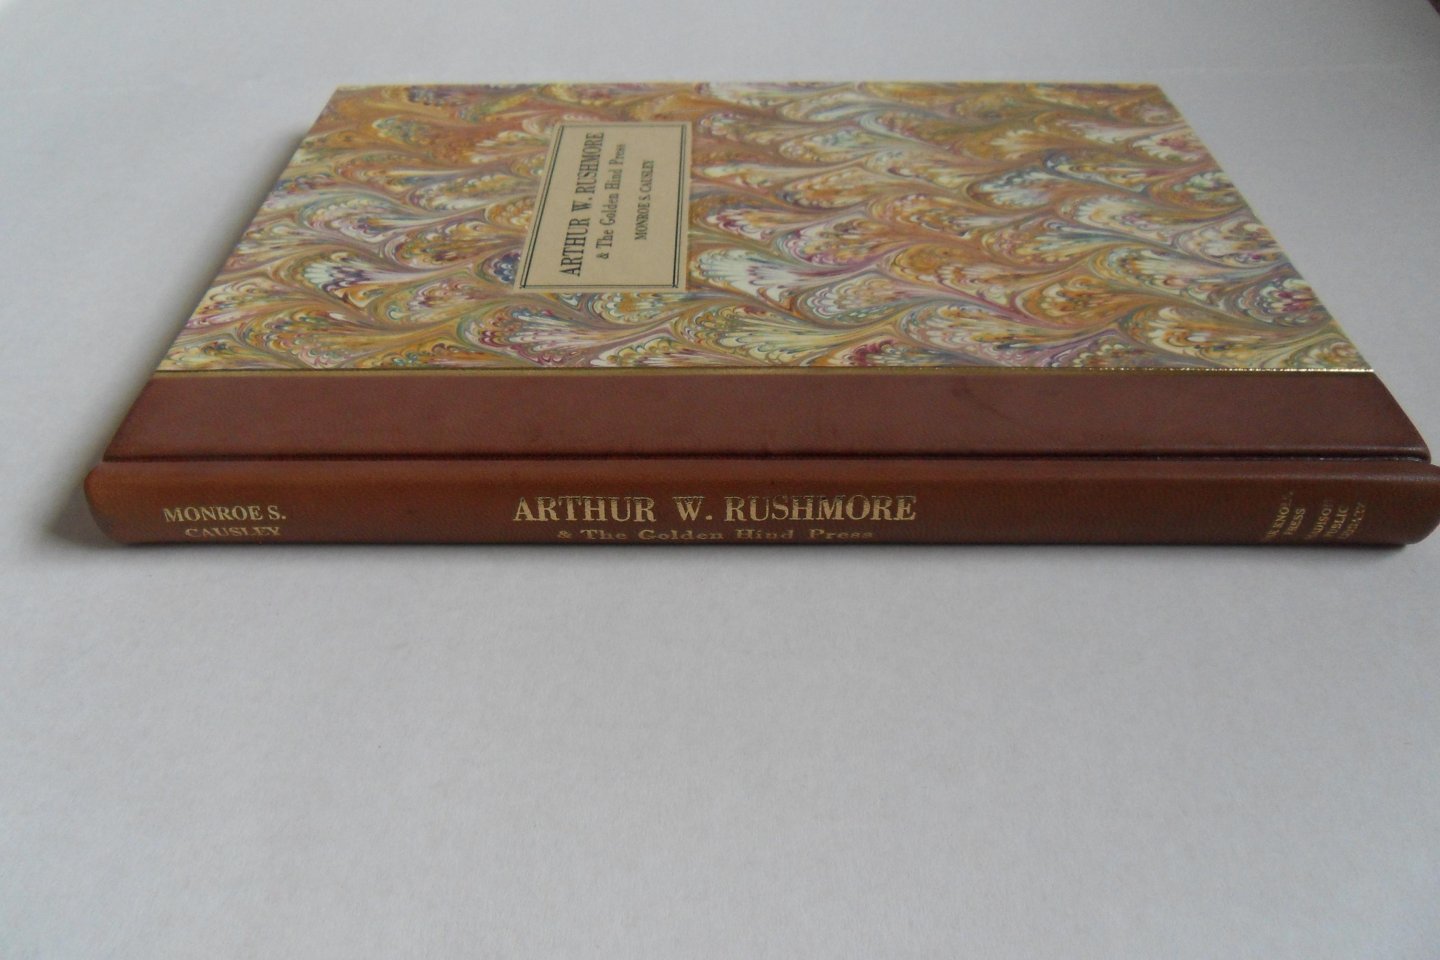 Causley, Monroe S. [ GESIGNEERD door de auteur onder het colophon ]. - Arthur W. Rushmore & The Golden Hind Press. [ Genummerd exemplaar 117 / 170 ].